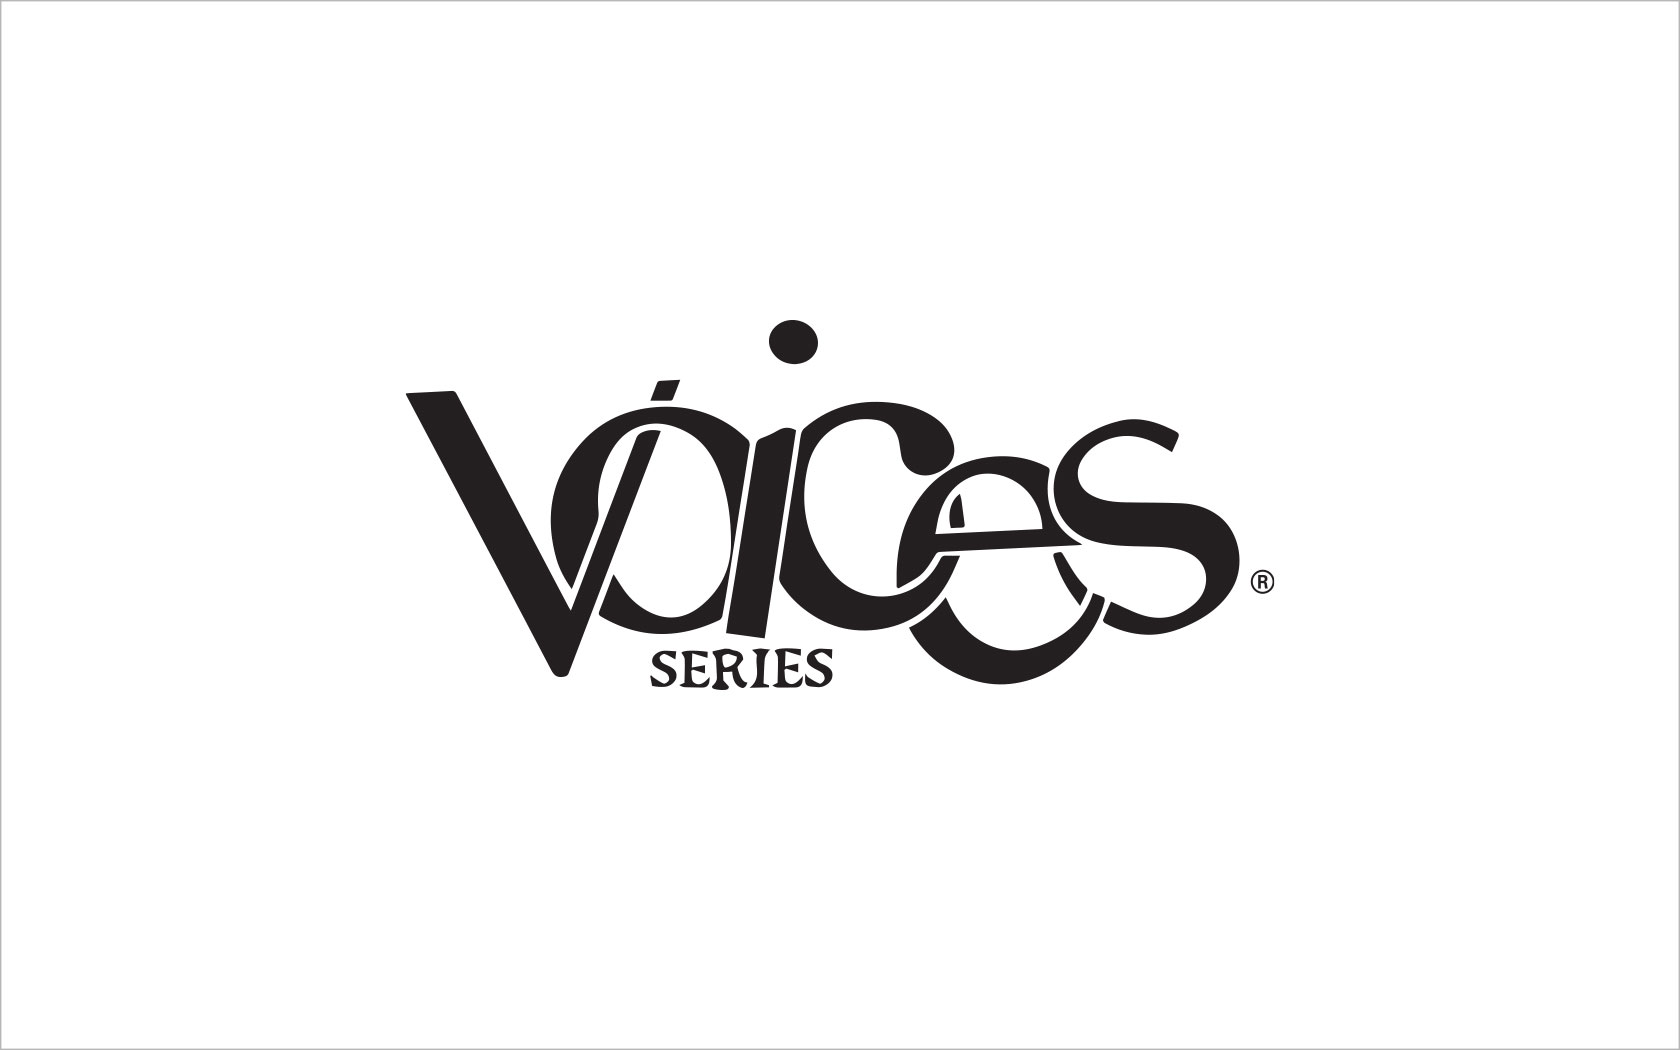 Voices series logo 